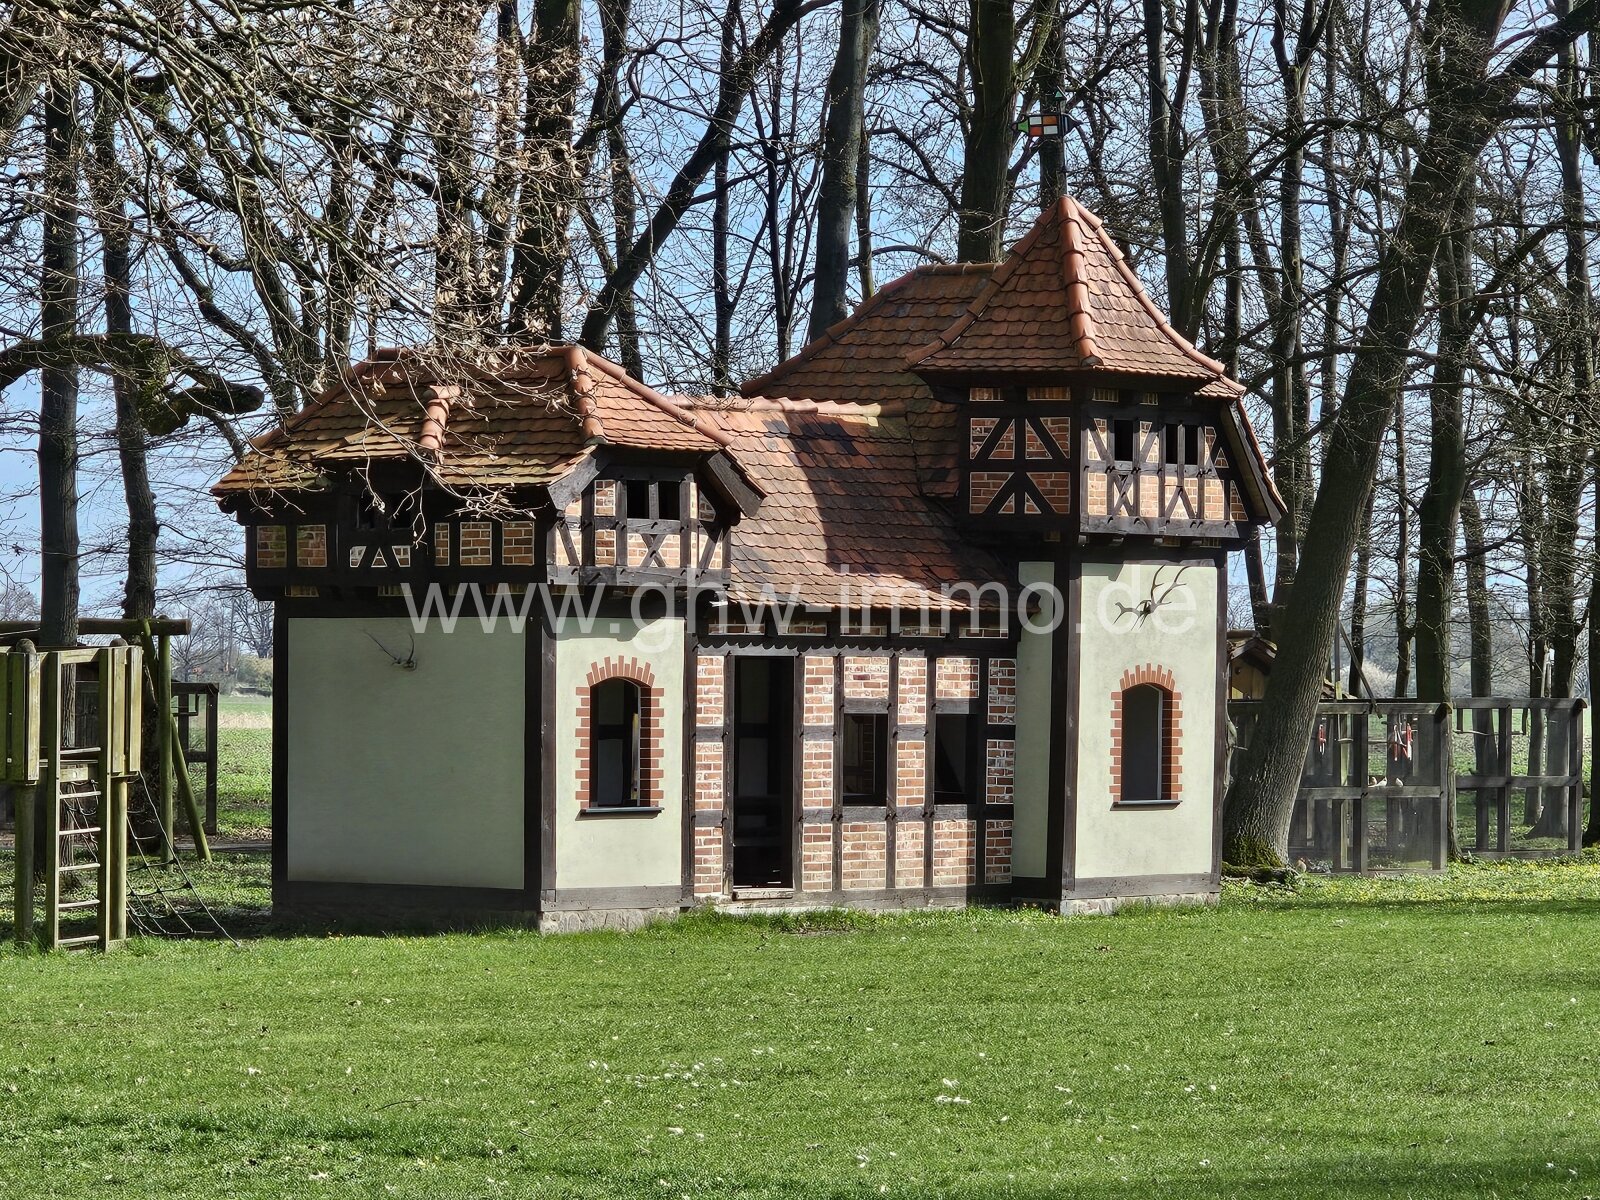 Modell Büttnershof für die kleinen Gäste